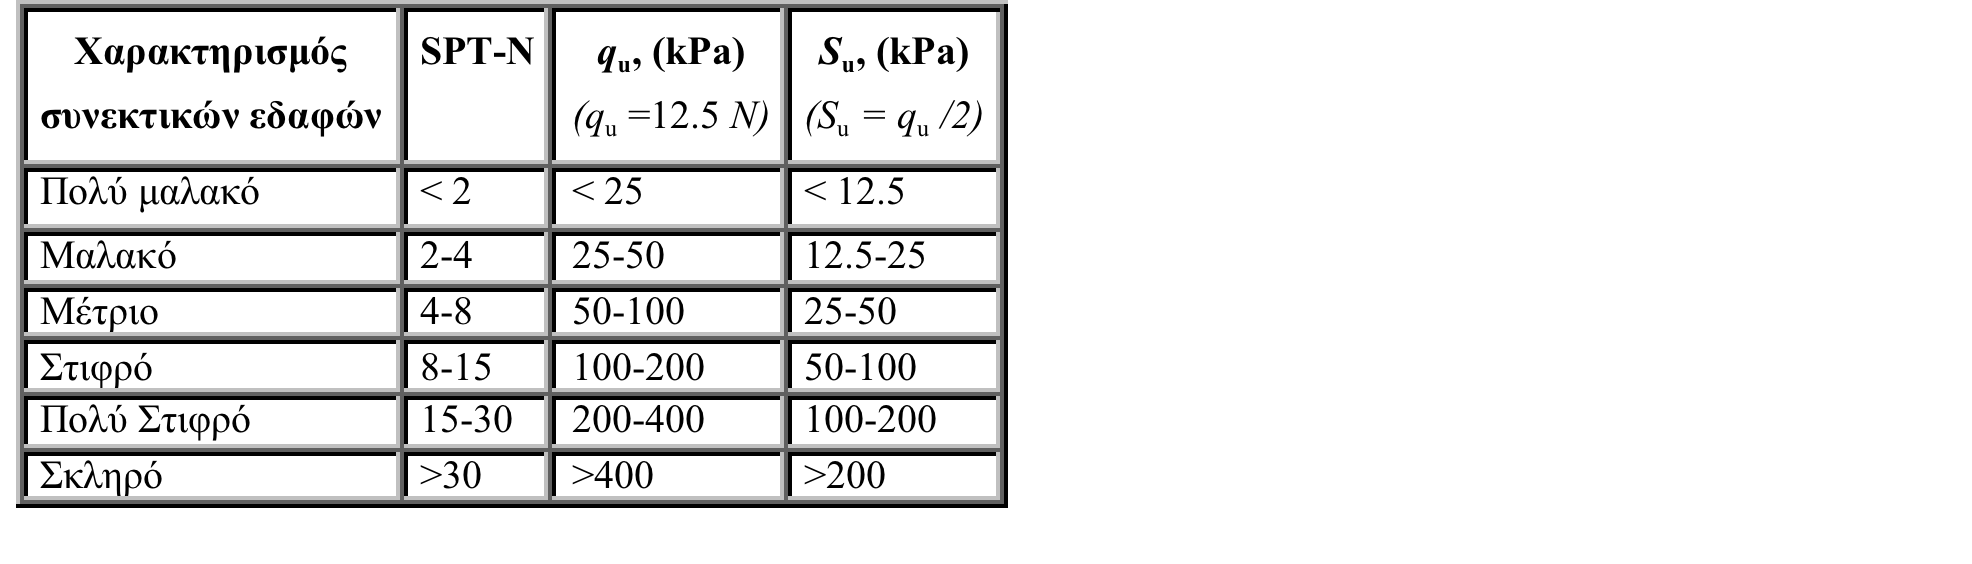 Βάθος (m) Κοκκοµετρία (%) Όρια Atteberg (%) εδαφικού δείγµατος χαλίκια άµµος Ιλύς+αργ LL PL PI (USCS) 1 2.00-2.40 0 49 51 26.2 15.